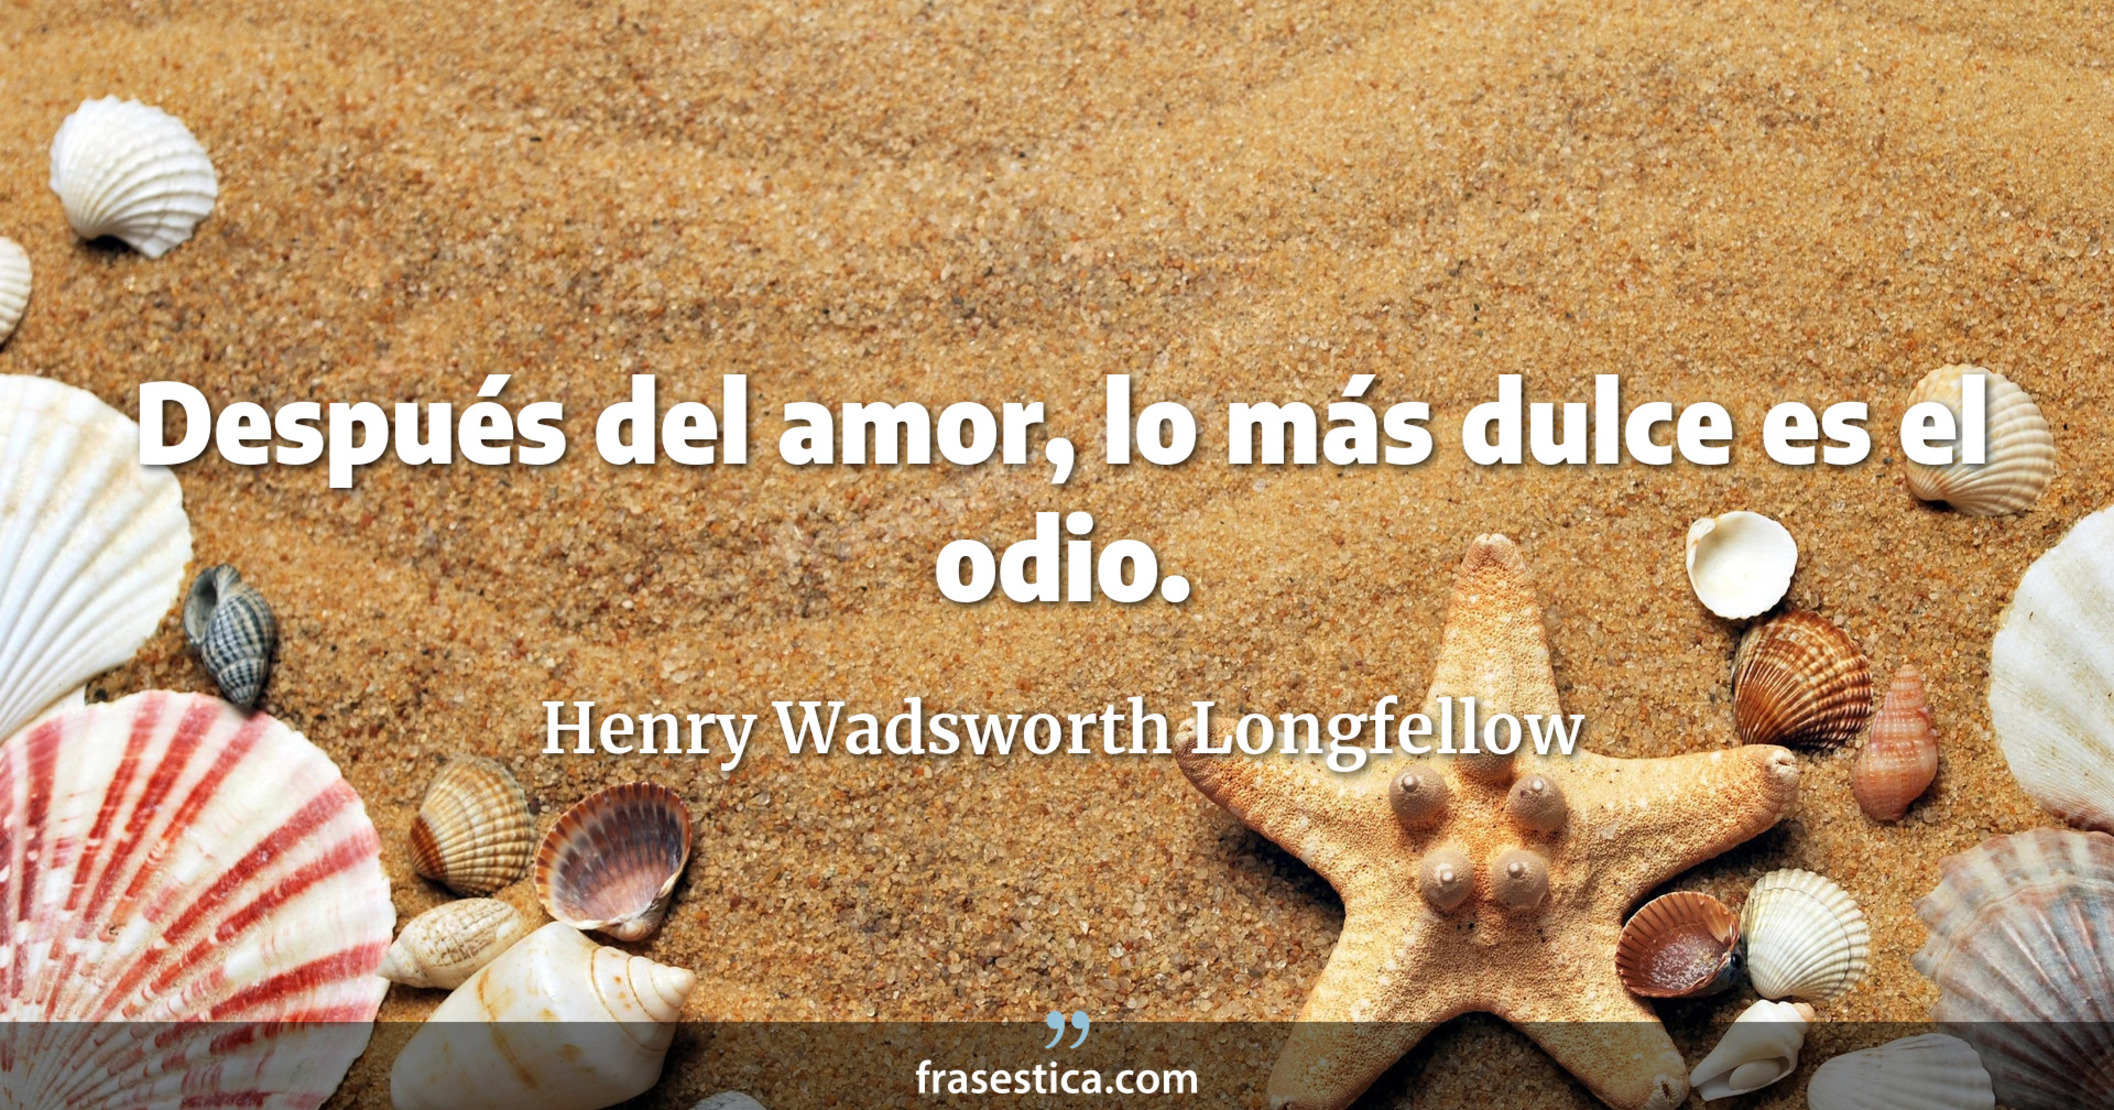 Después del amor, lo más dulce es el odio. - Henry Wadsworth Longfellow